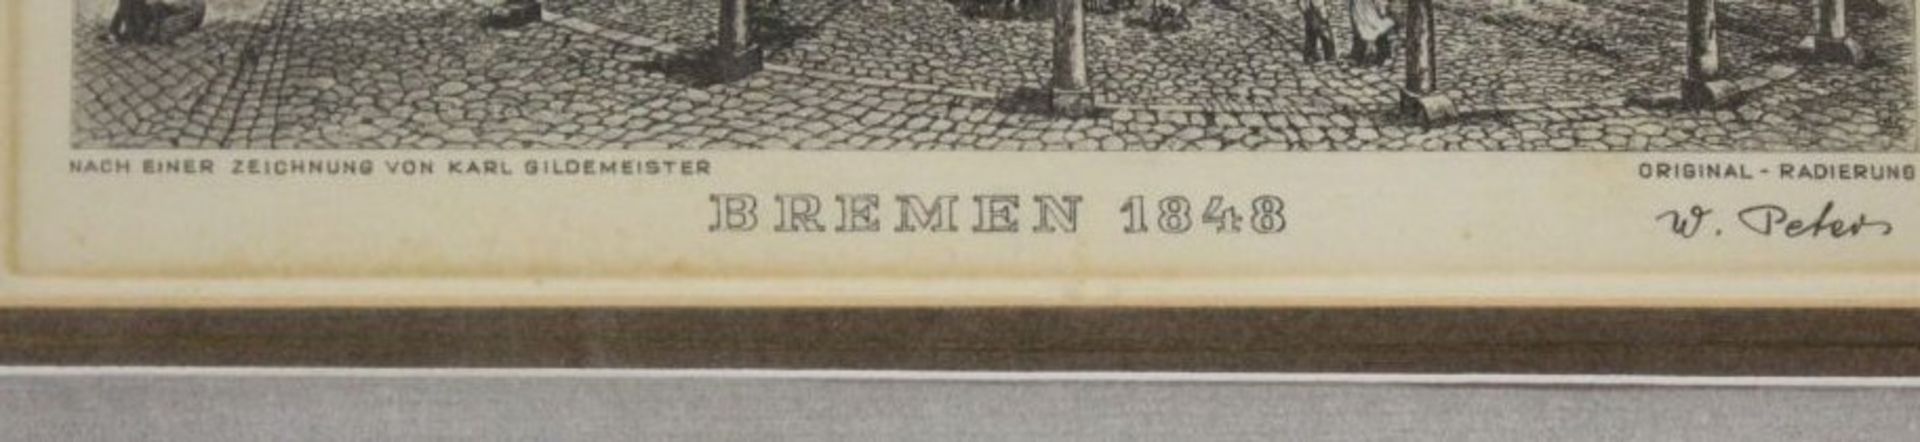 W.Peters, Ansicht Bremen 1848, Radierung, ger./Glas, RG 27,5 x 30cm. - Bild 2 aus 3